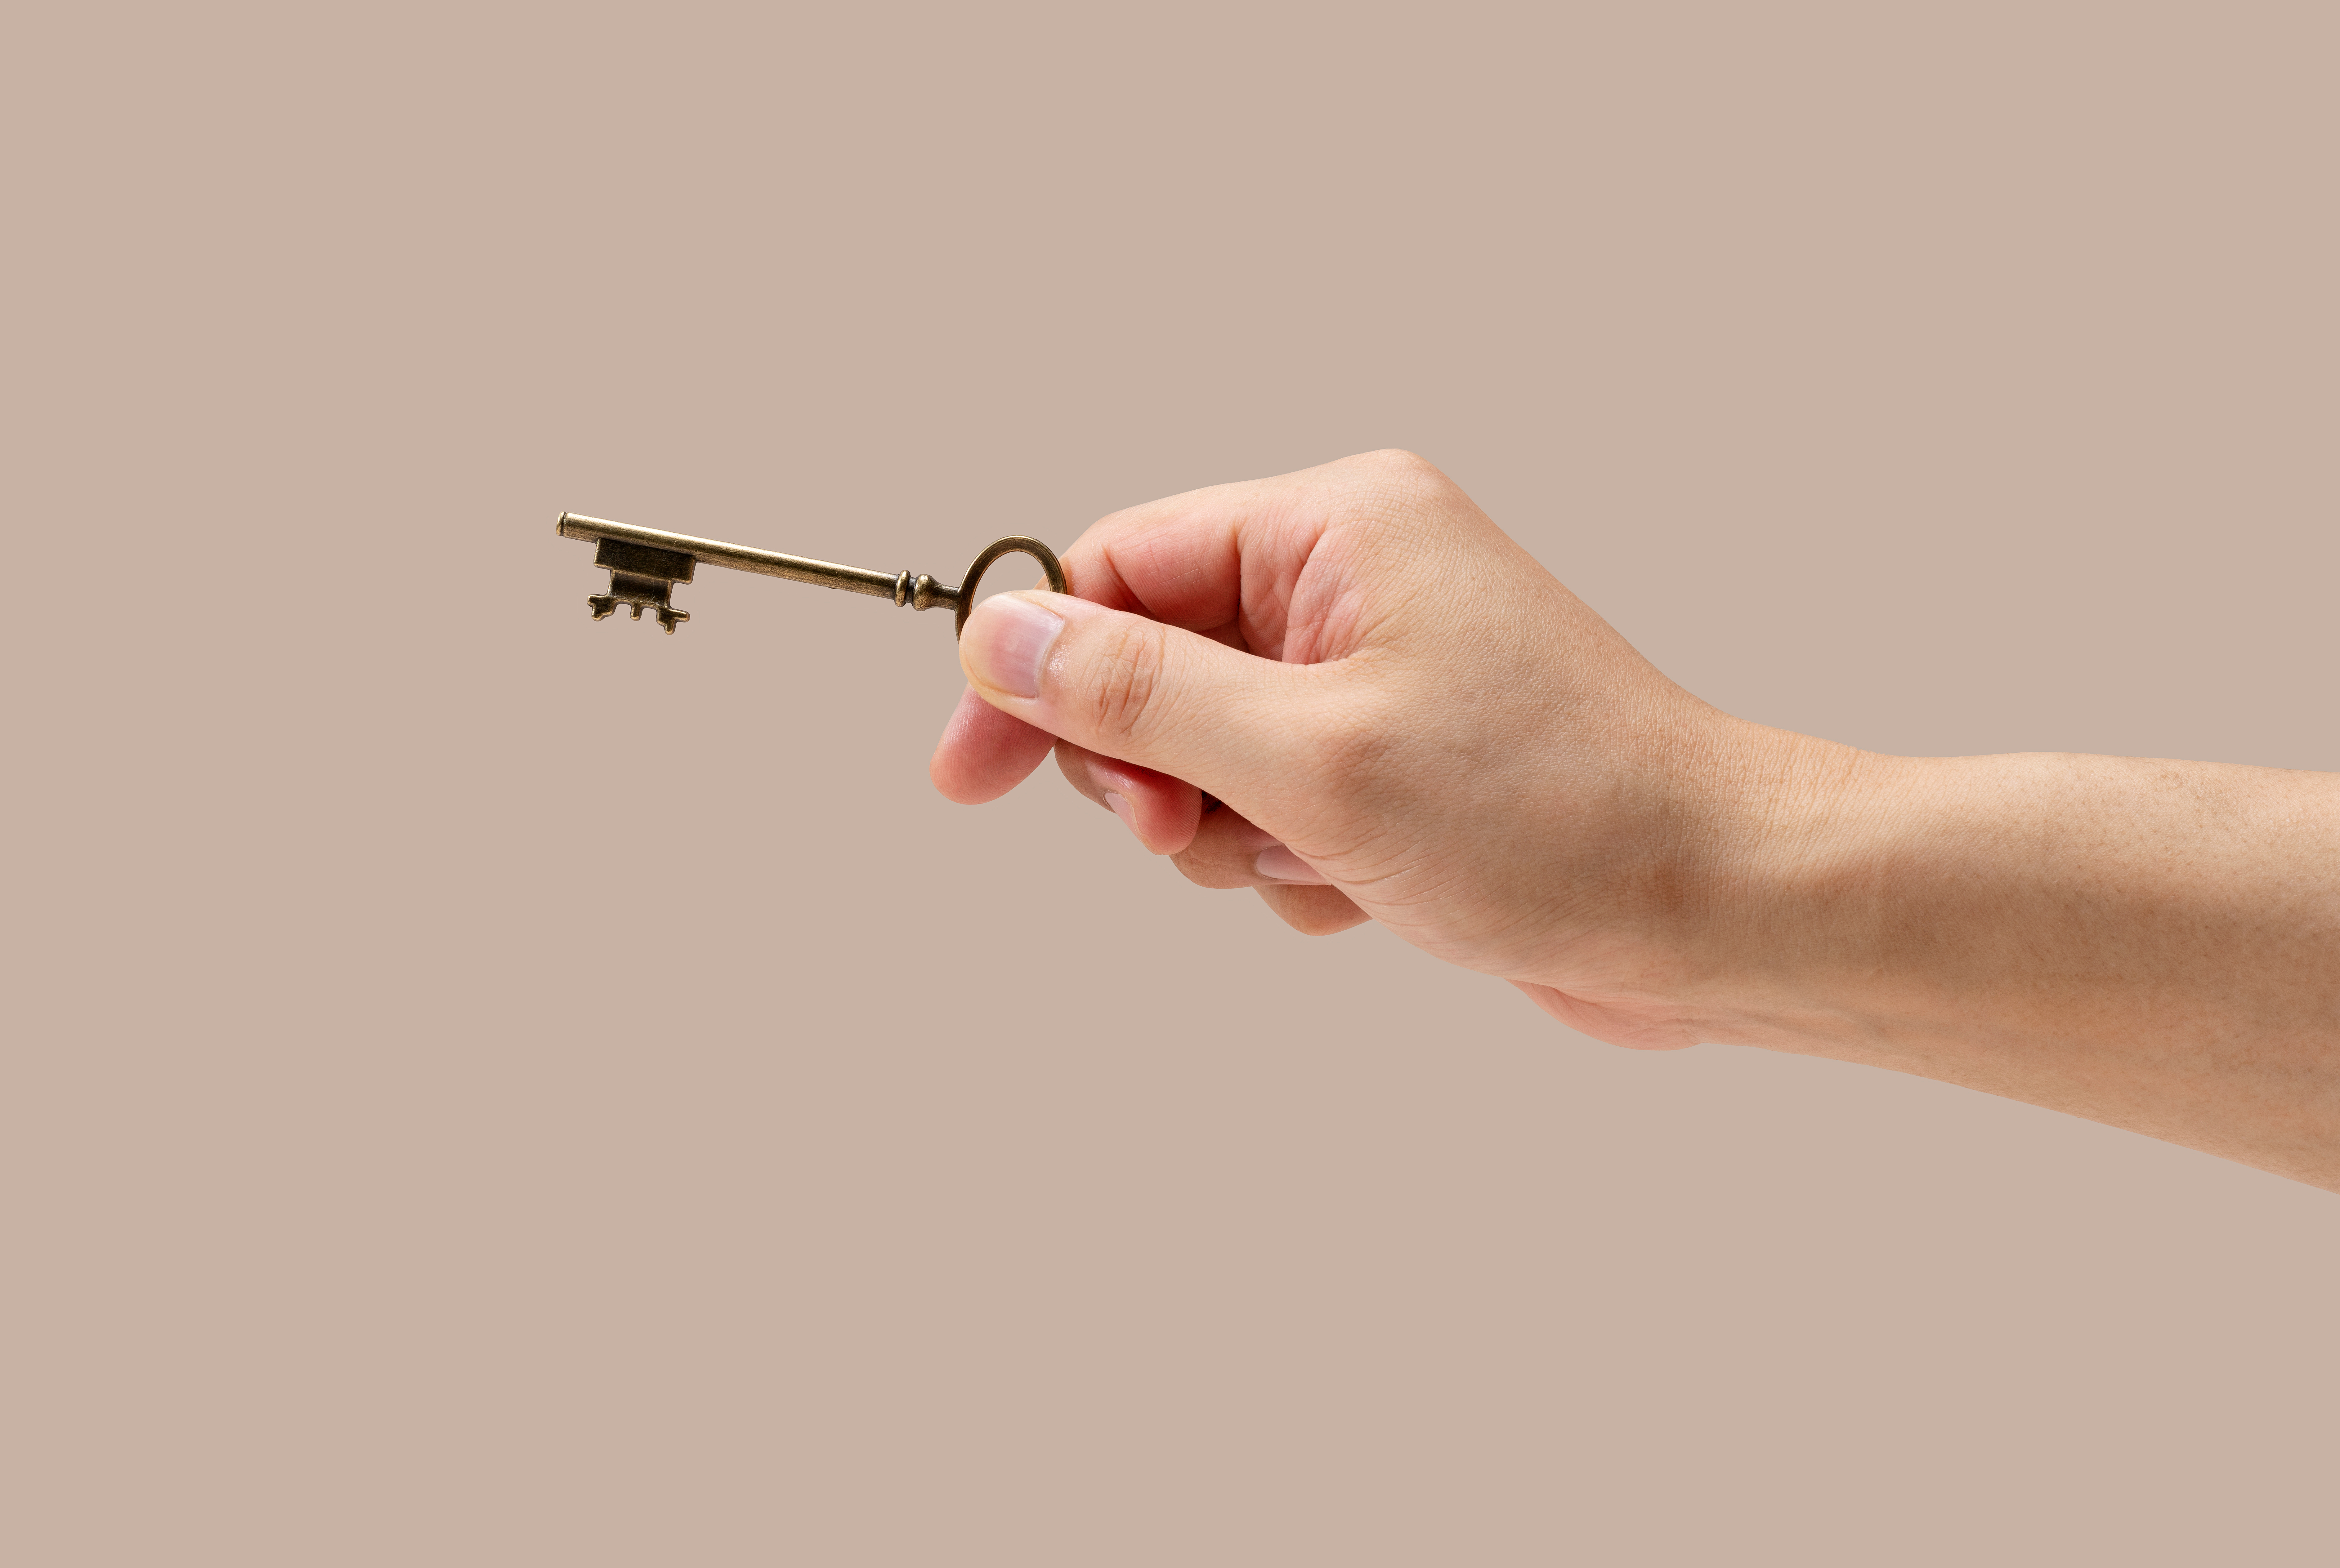 A man's hand holding a brass key | Source: Shutterstock